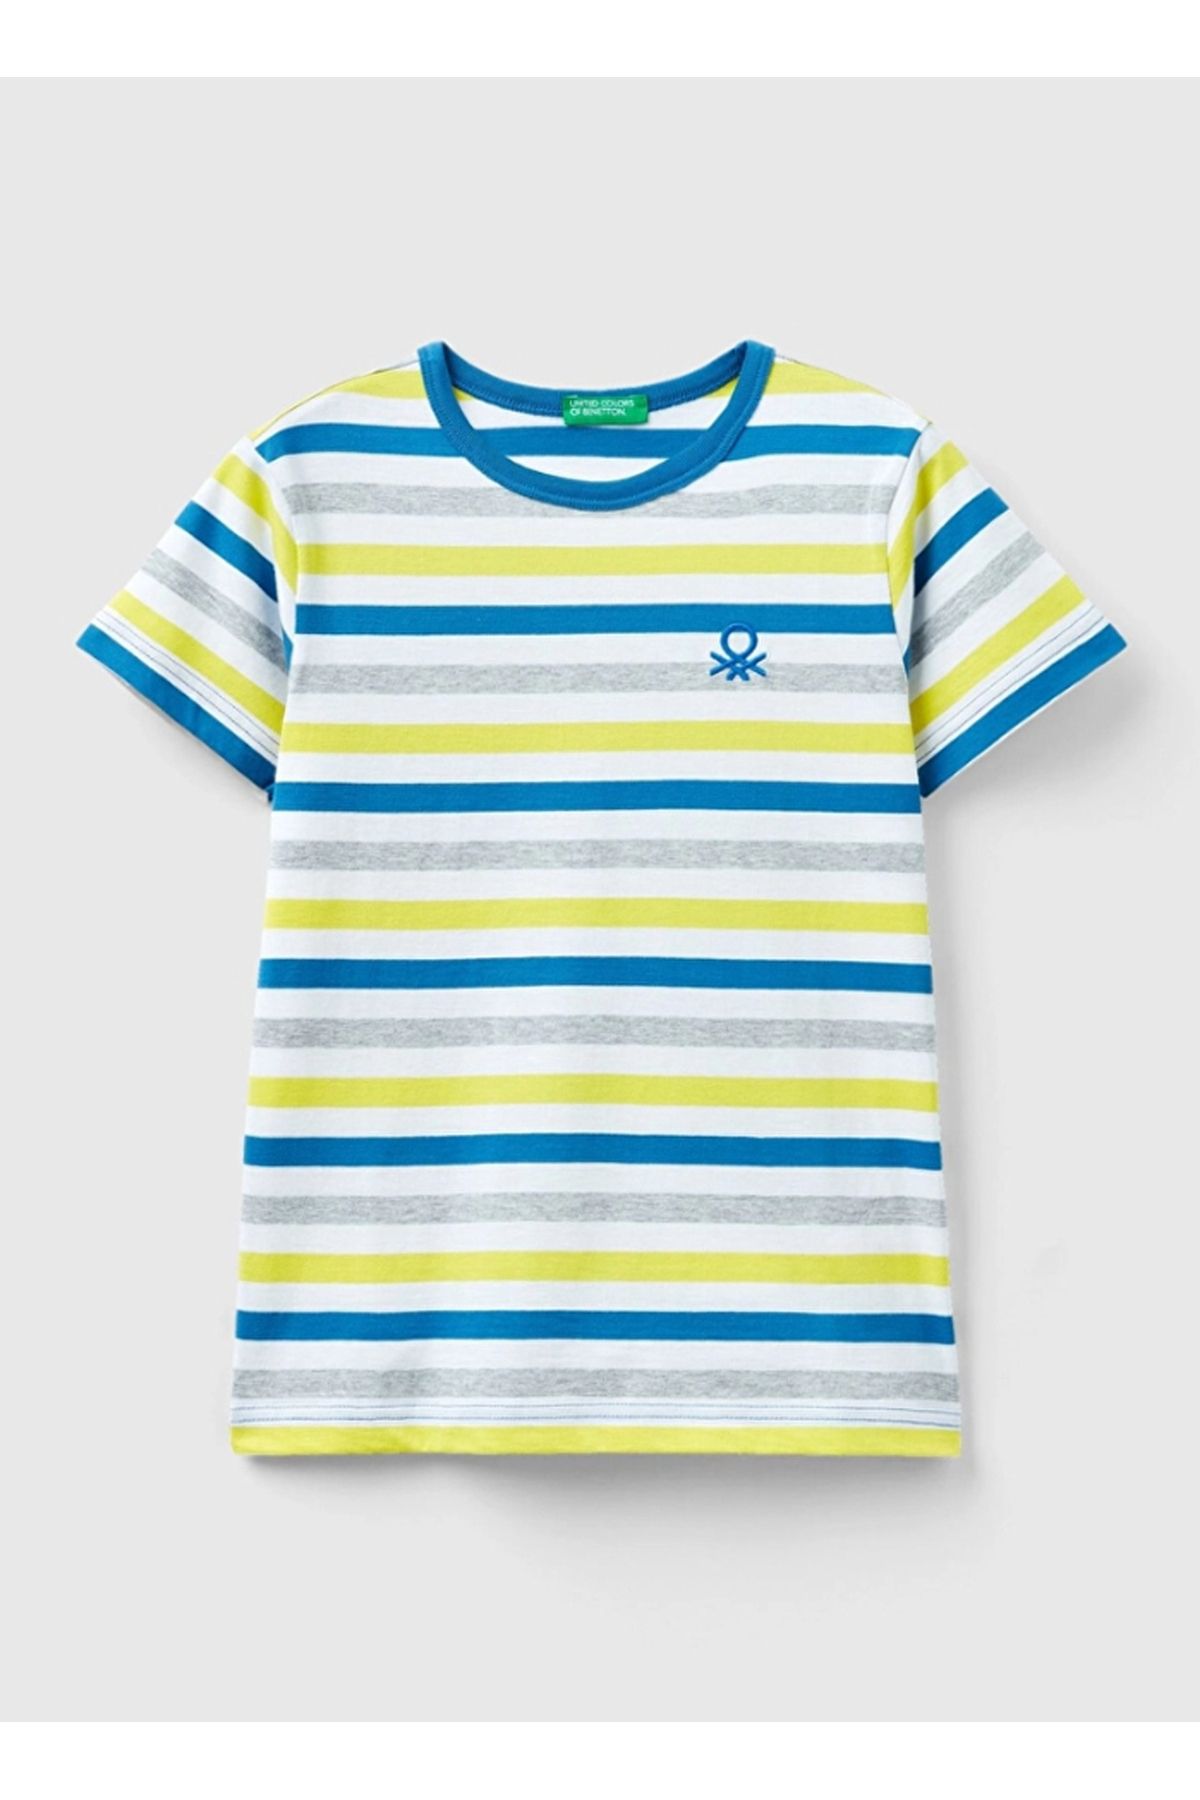 Benetton Mavi - Beyaz Erkek Çocuk T-Shirt 3EJGC10H4